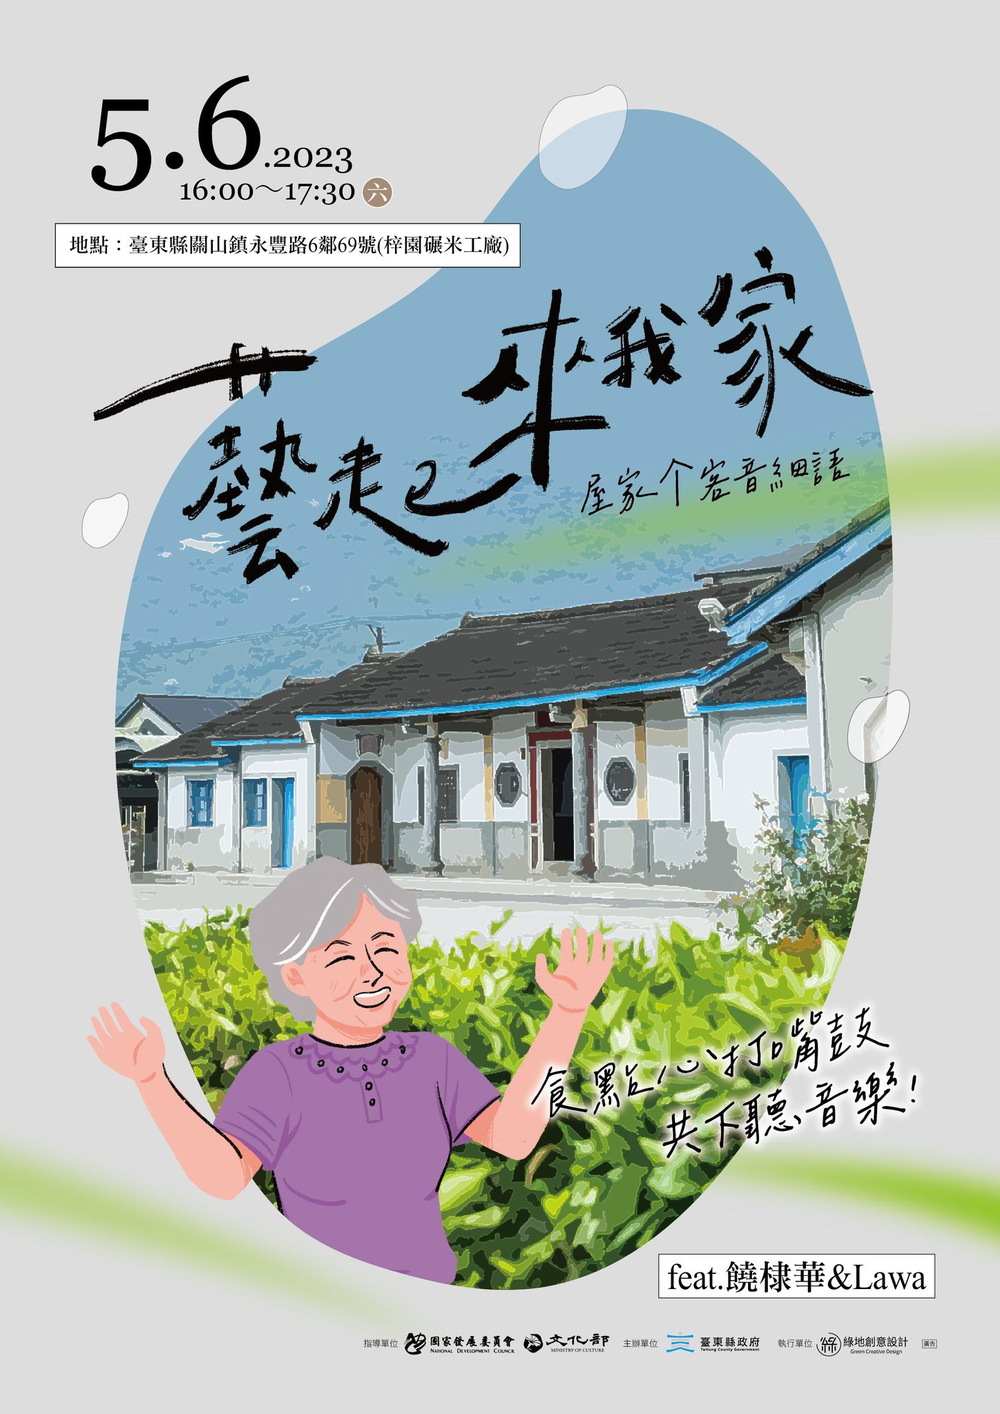 「藝起來我家」庭院分享會前進關山、池上 一起成為「藝」家人 - 台北郵報 | The Taipei Post